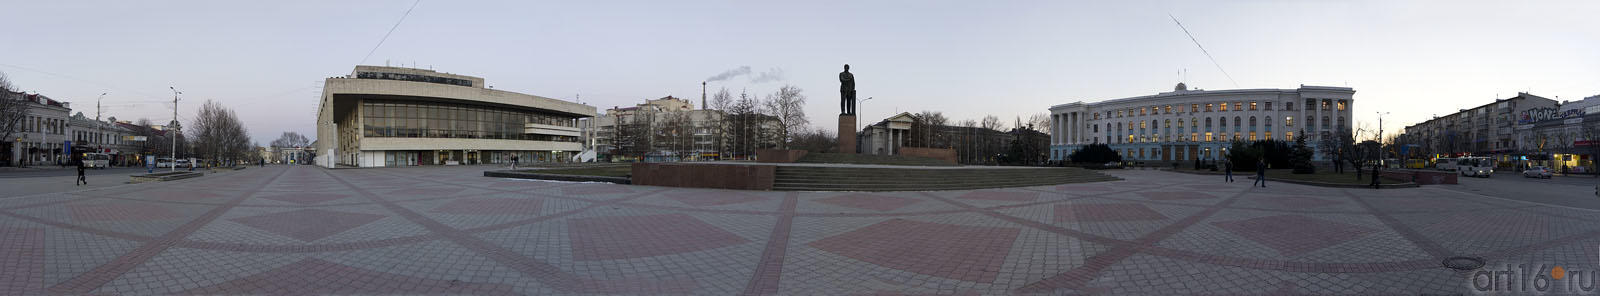 Площадь им. В.И.Ленина::Симферополь, февраль 2011